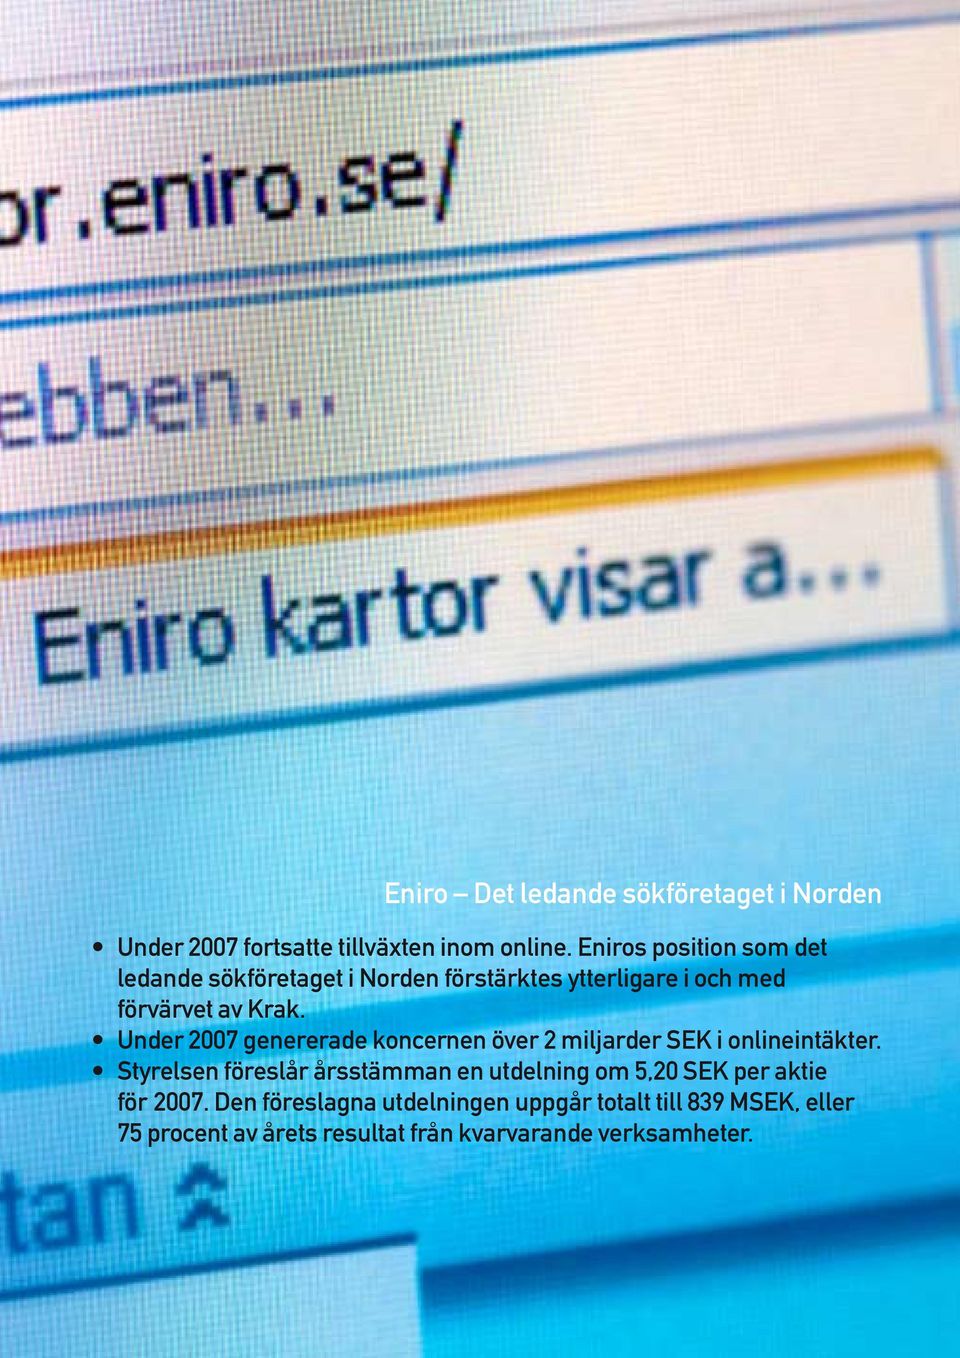 Under 2007 genererade koncernen över 2 miljarder SEK i onlineintäkter.